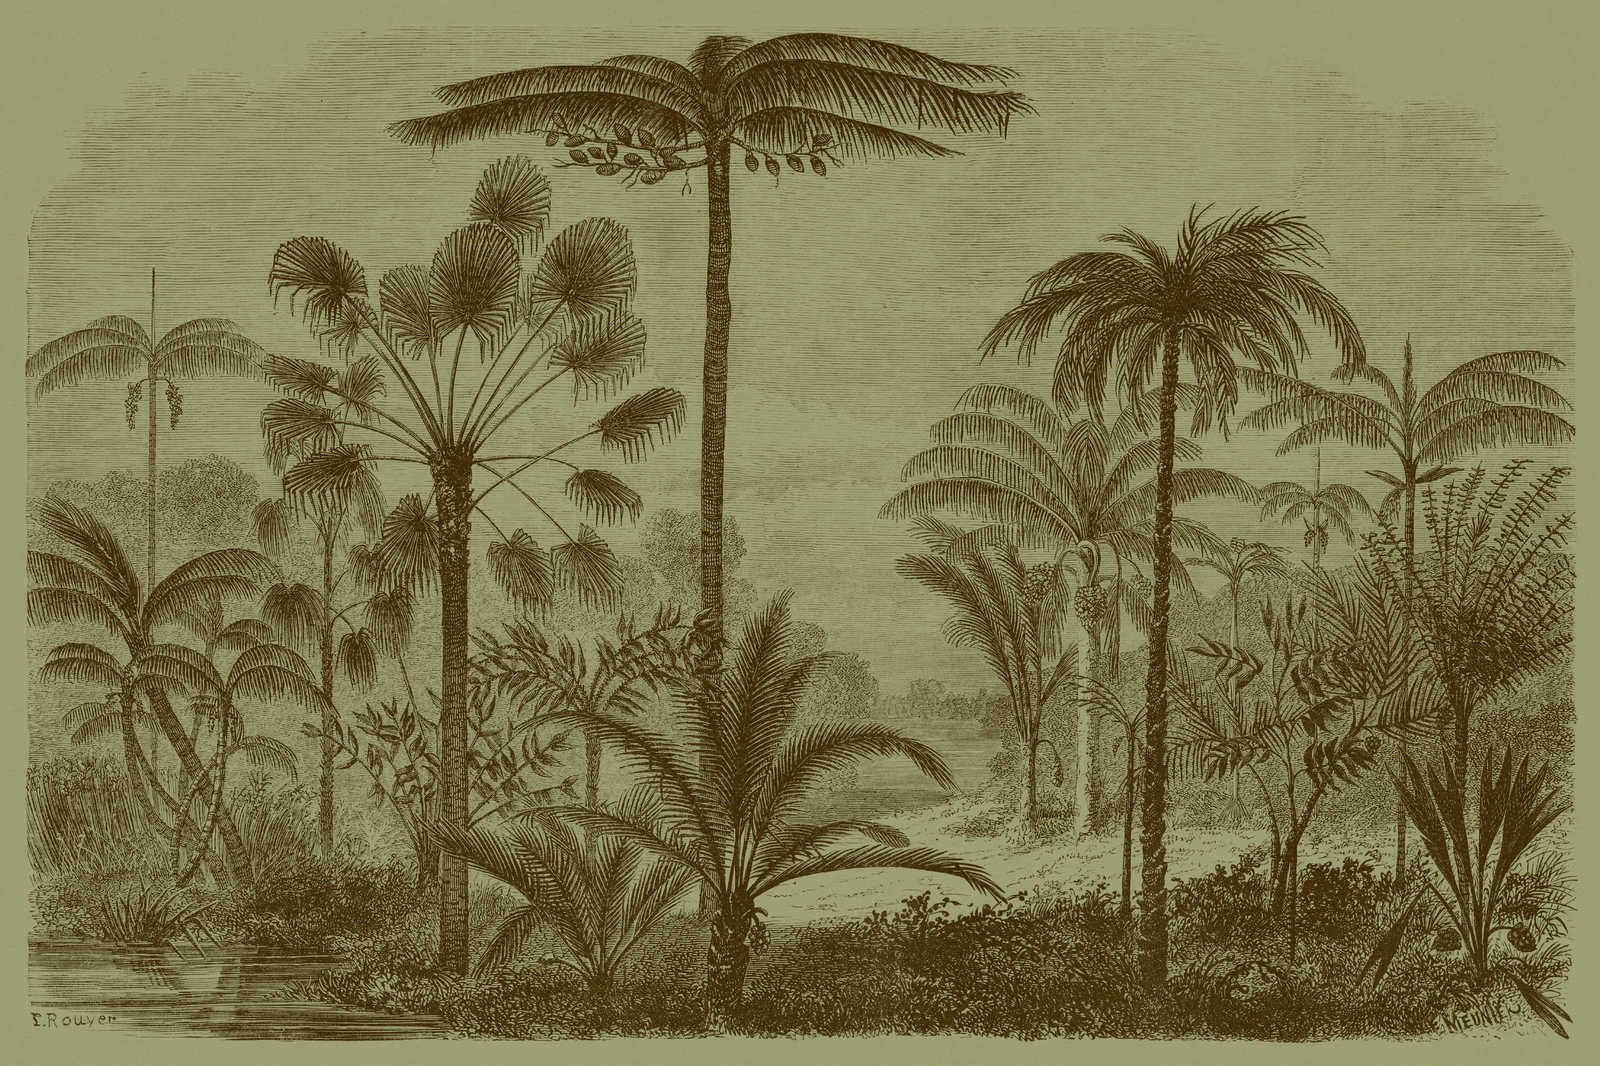             Jurassic 1 - Leinwandbild Dschungelmotiv Kupferstich – 1,20 m x 0,80 m
        